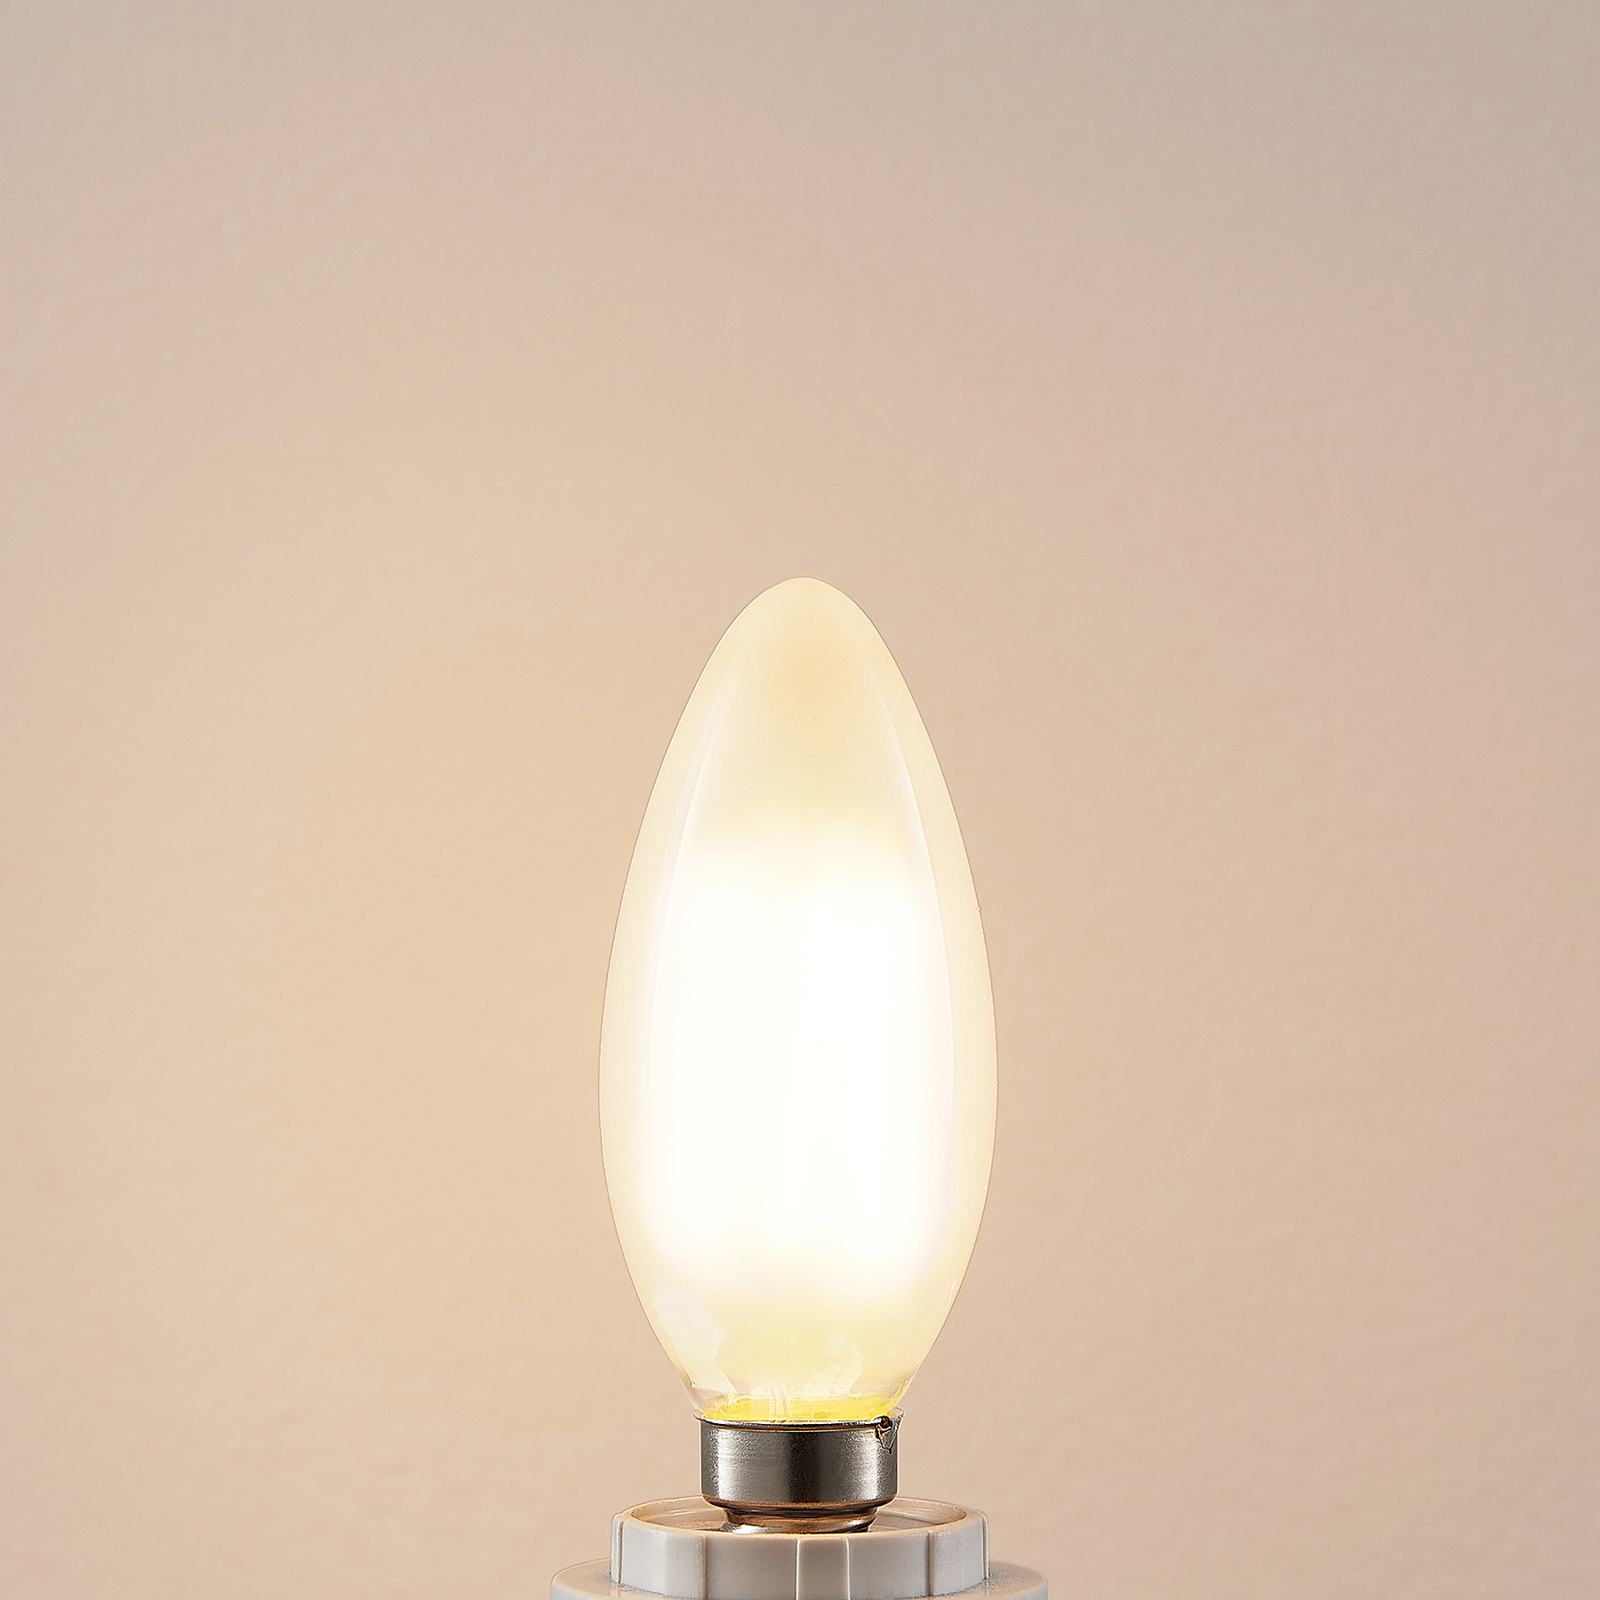 LED lempa E14 4W 2700K žvakė, reguliuojamo ryškumo, matinė, 2 vnt